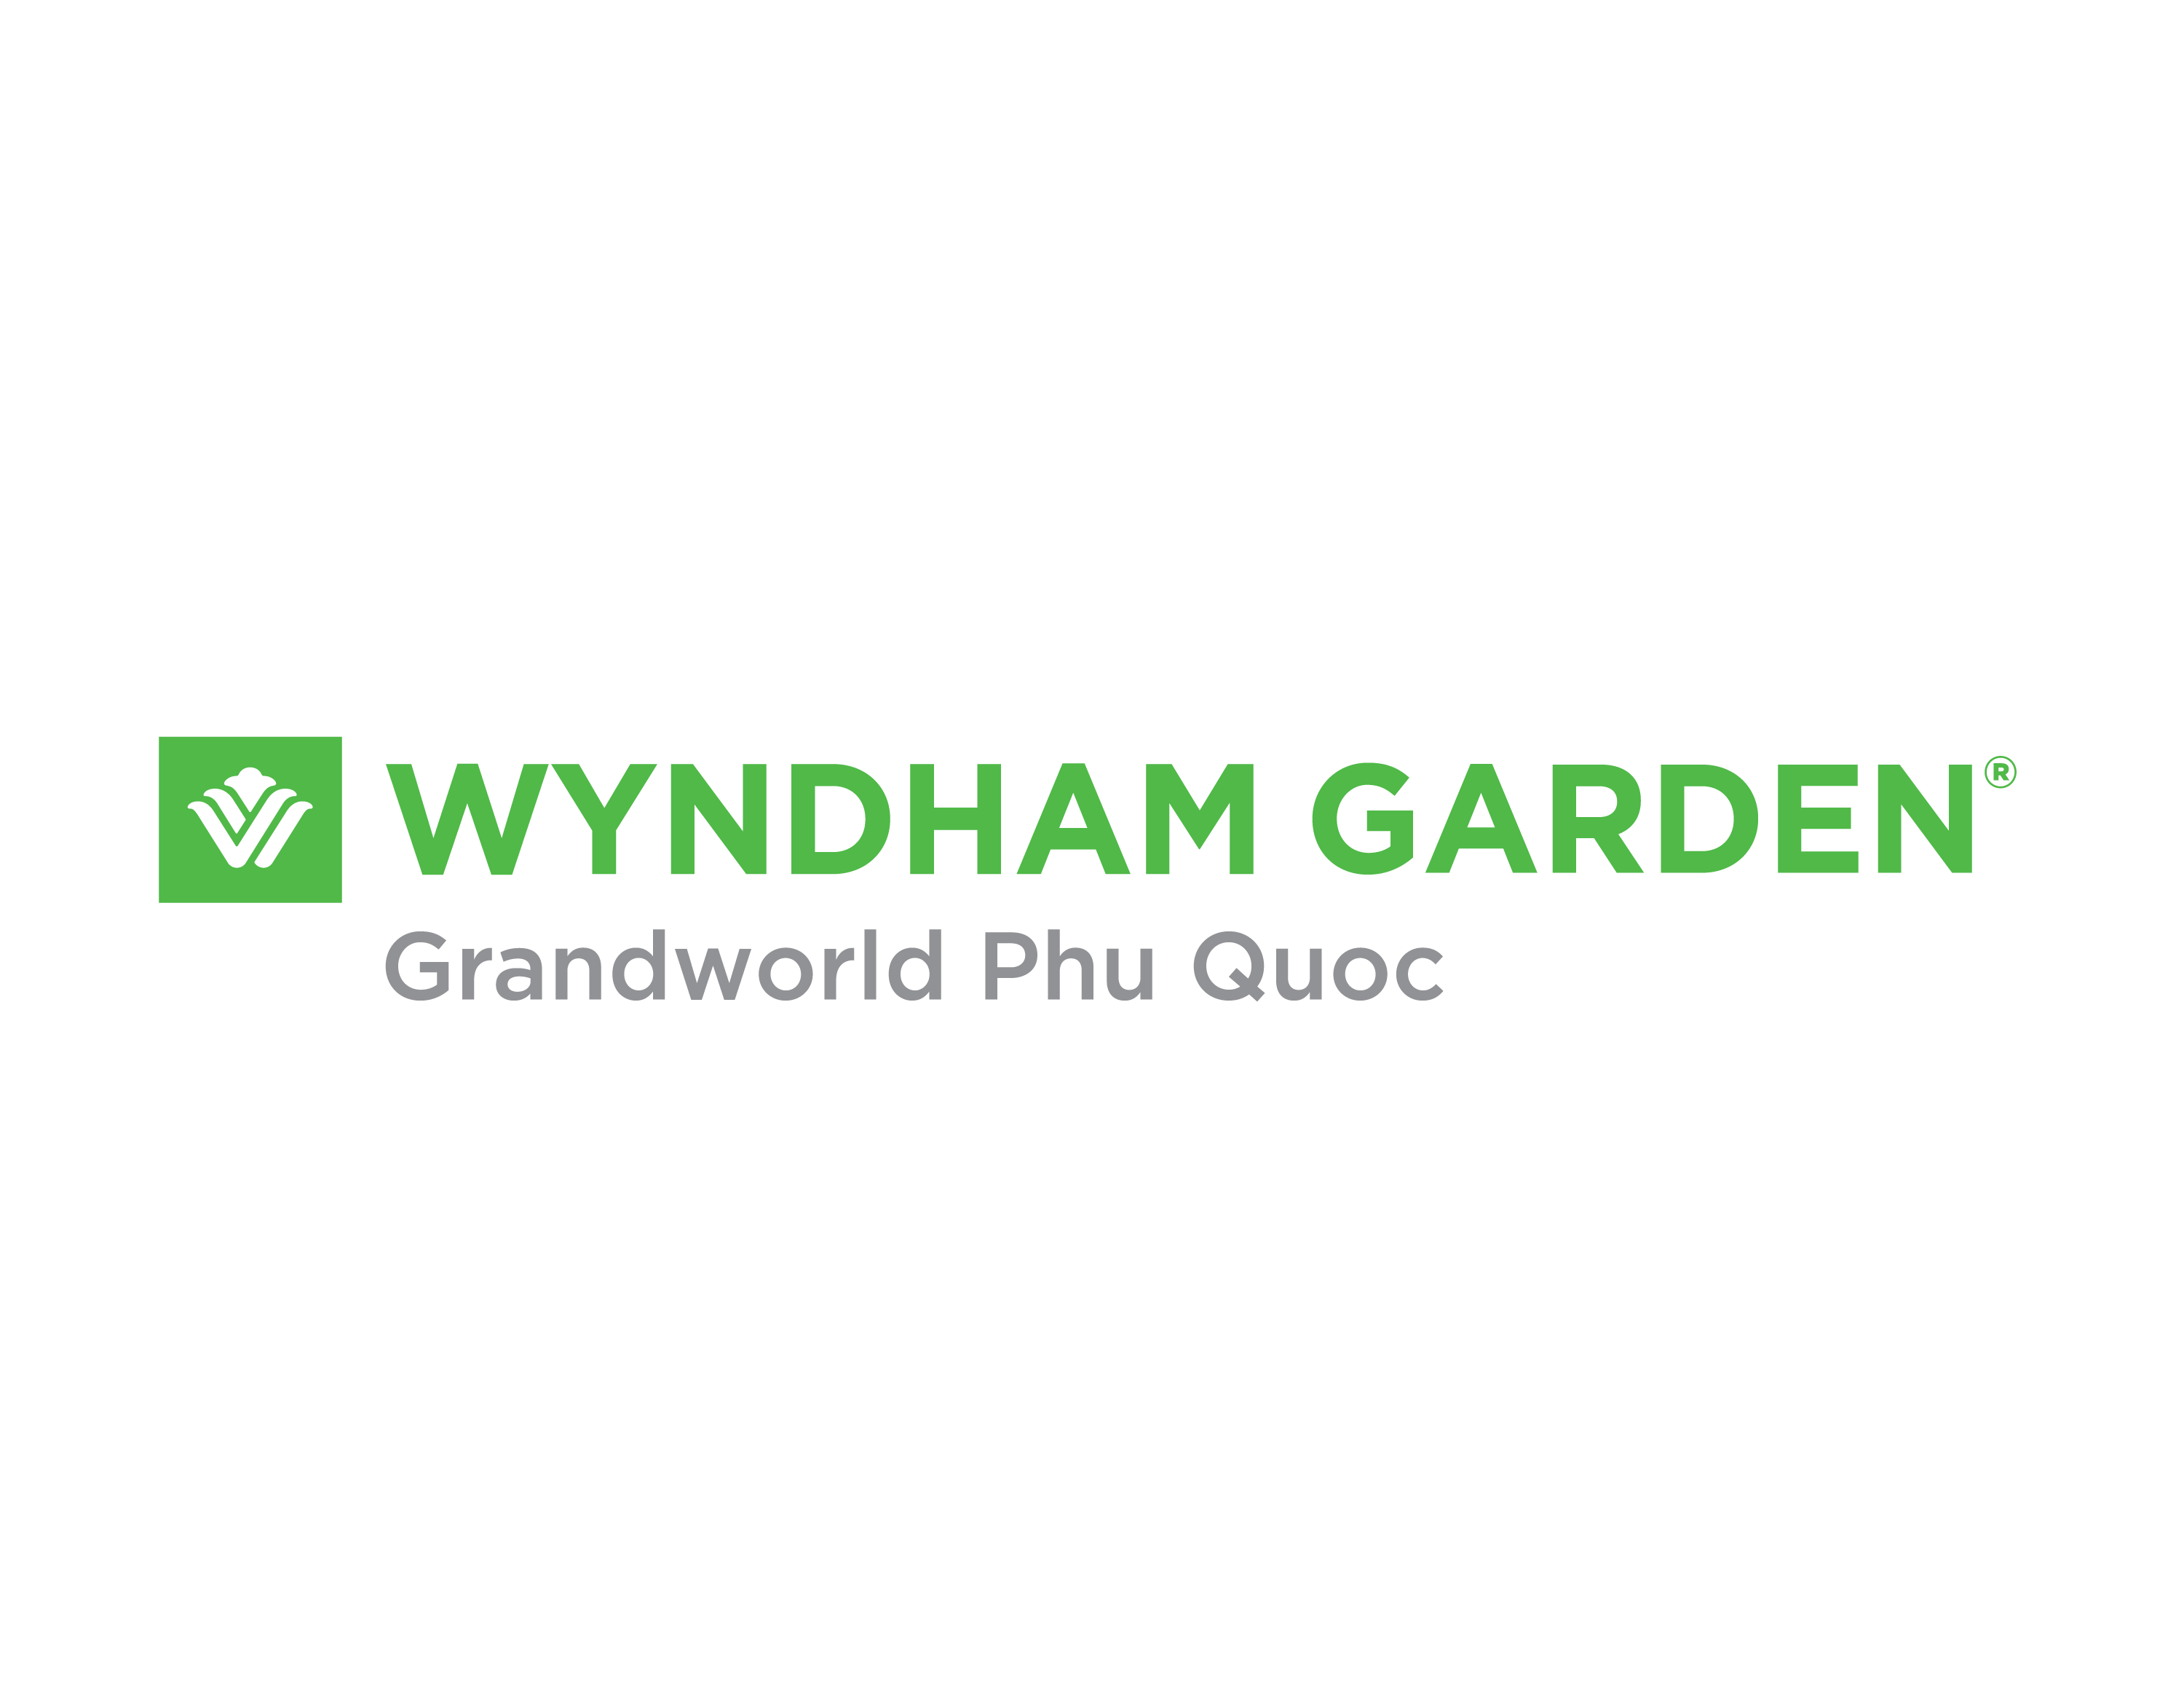 Wyndham Garden Grandworld Phu Quoc